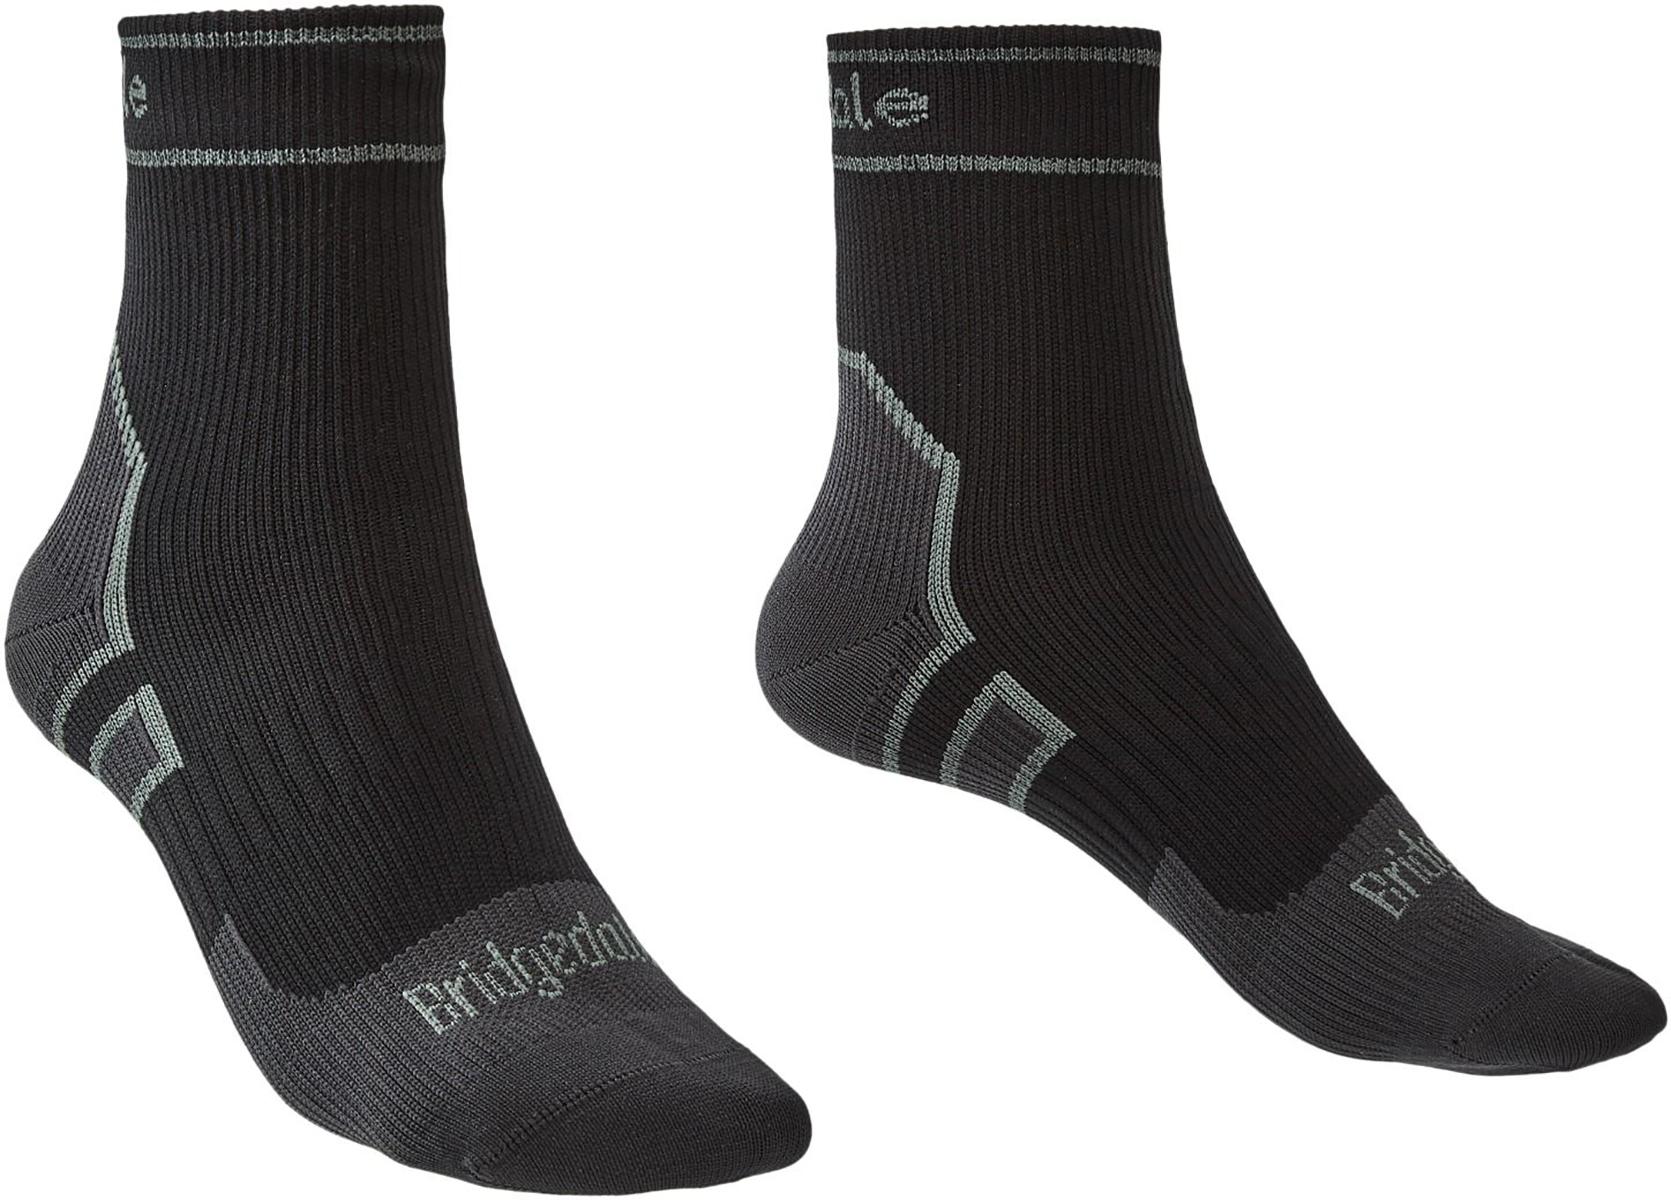 Bridgedale Stormsock Lightweight Waterproof Ankle Socks - Black